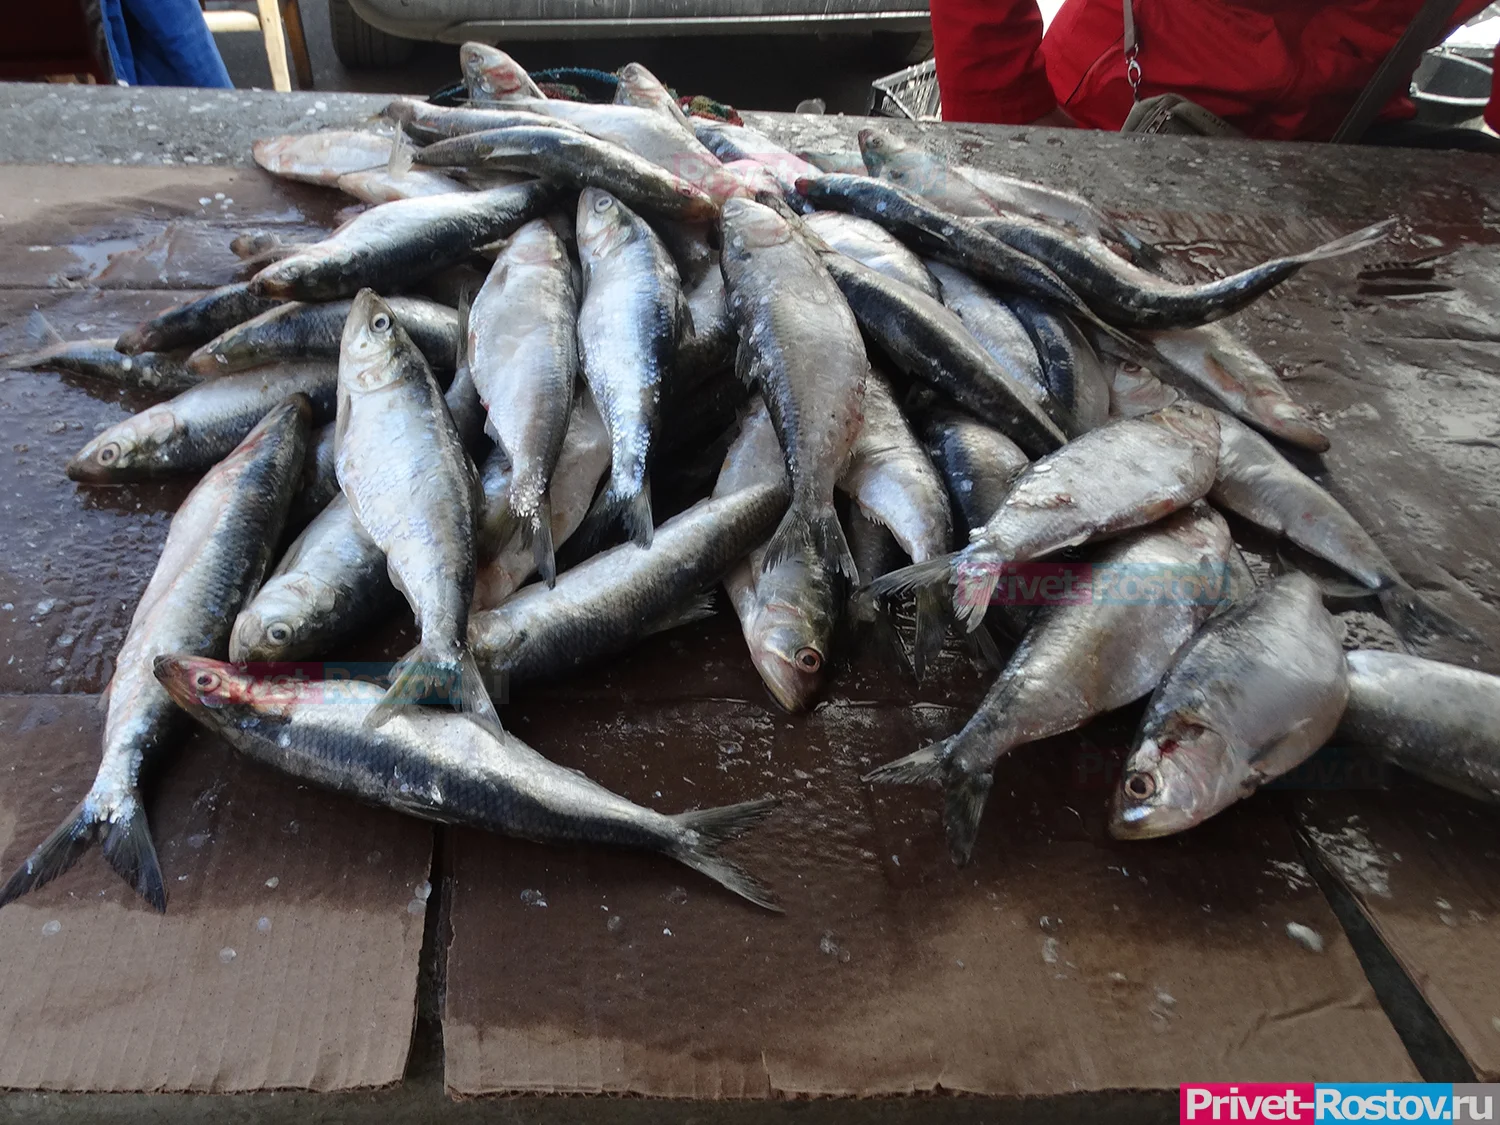 В Ростовской области задержали браконьера, выловившего краснокнижной рыбы на 5 млн рублей